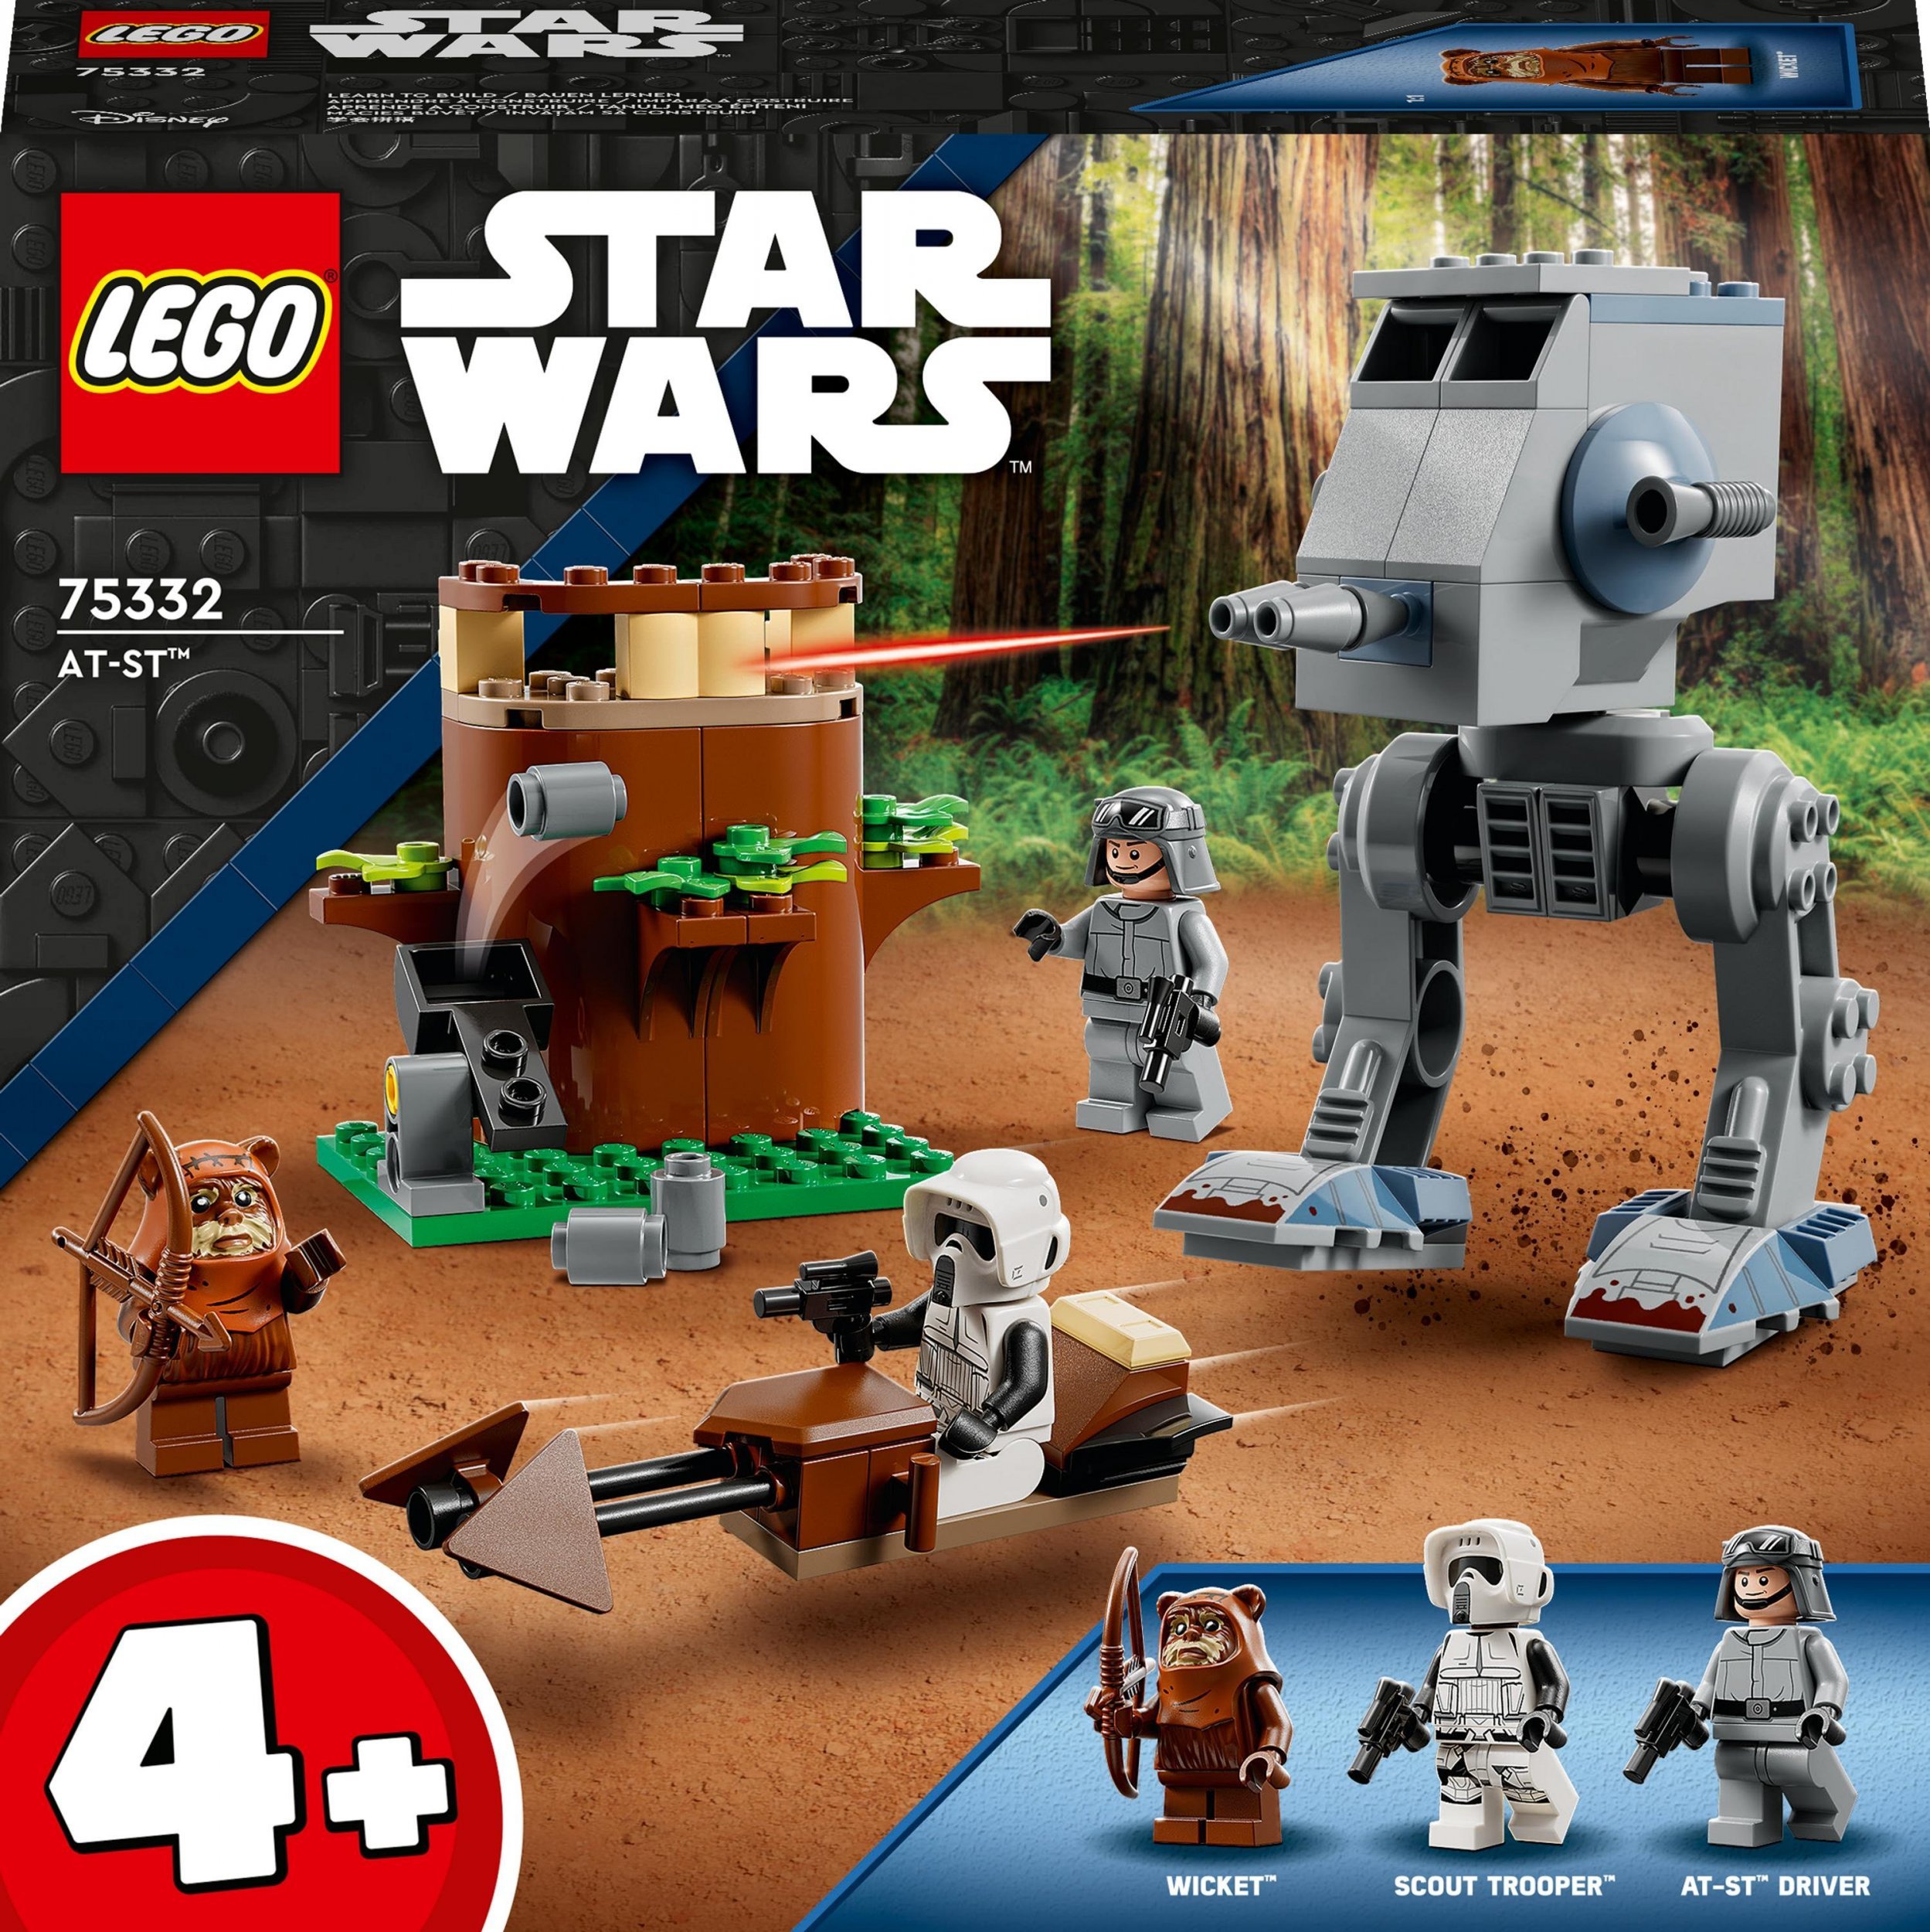 LEGO Star Wars AT-ST (75332) este un set de construcție ce reprezintă un robot de luptă din seria Star Wars, construit din piese de LEGO. Este inspirat de modelul AT-ST (All Terrain Scout Transport) prezent în filmele Star Wars și include detalii rea